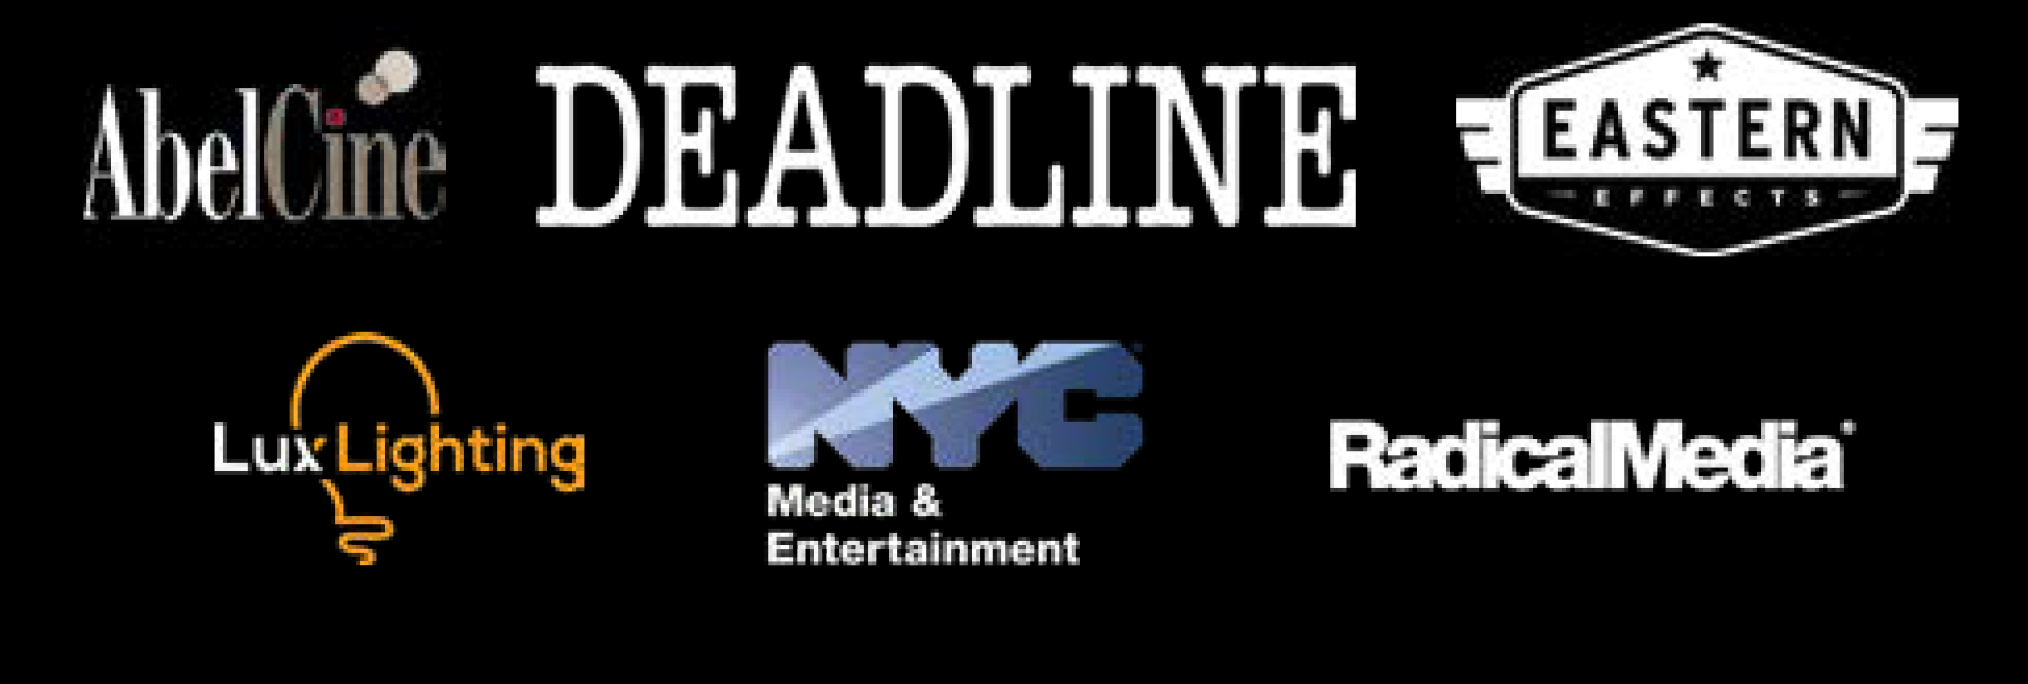 AbelCine 的标志； 最后期限; 东方效应； 勒克斯照明； 纽约市媒体与娱乐部； 和激进媒体